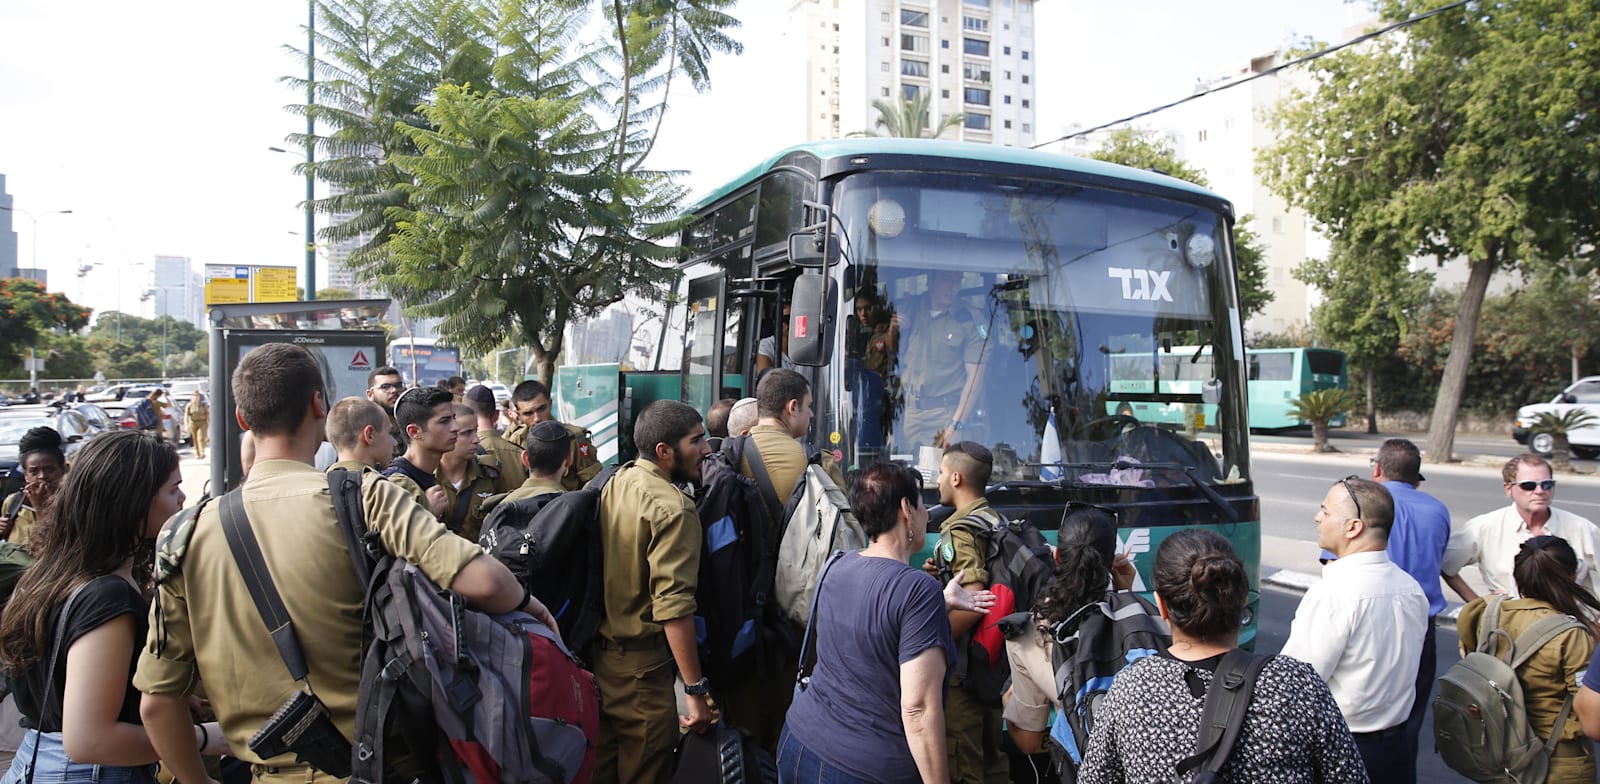 חיילים בדרך לאוטובוס / צילום: מגד גוזני, וואלה! NEWS